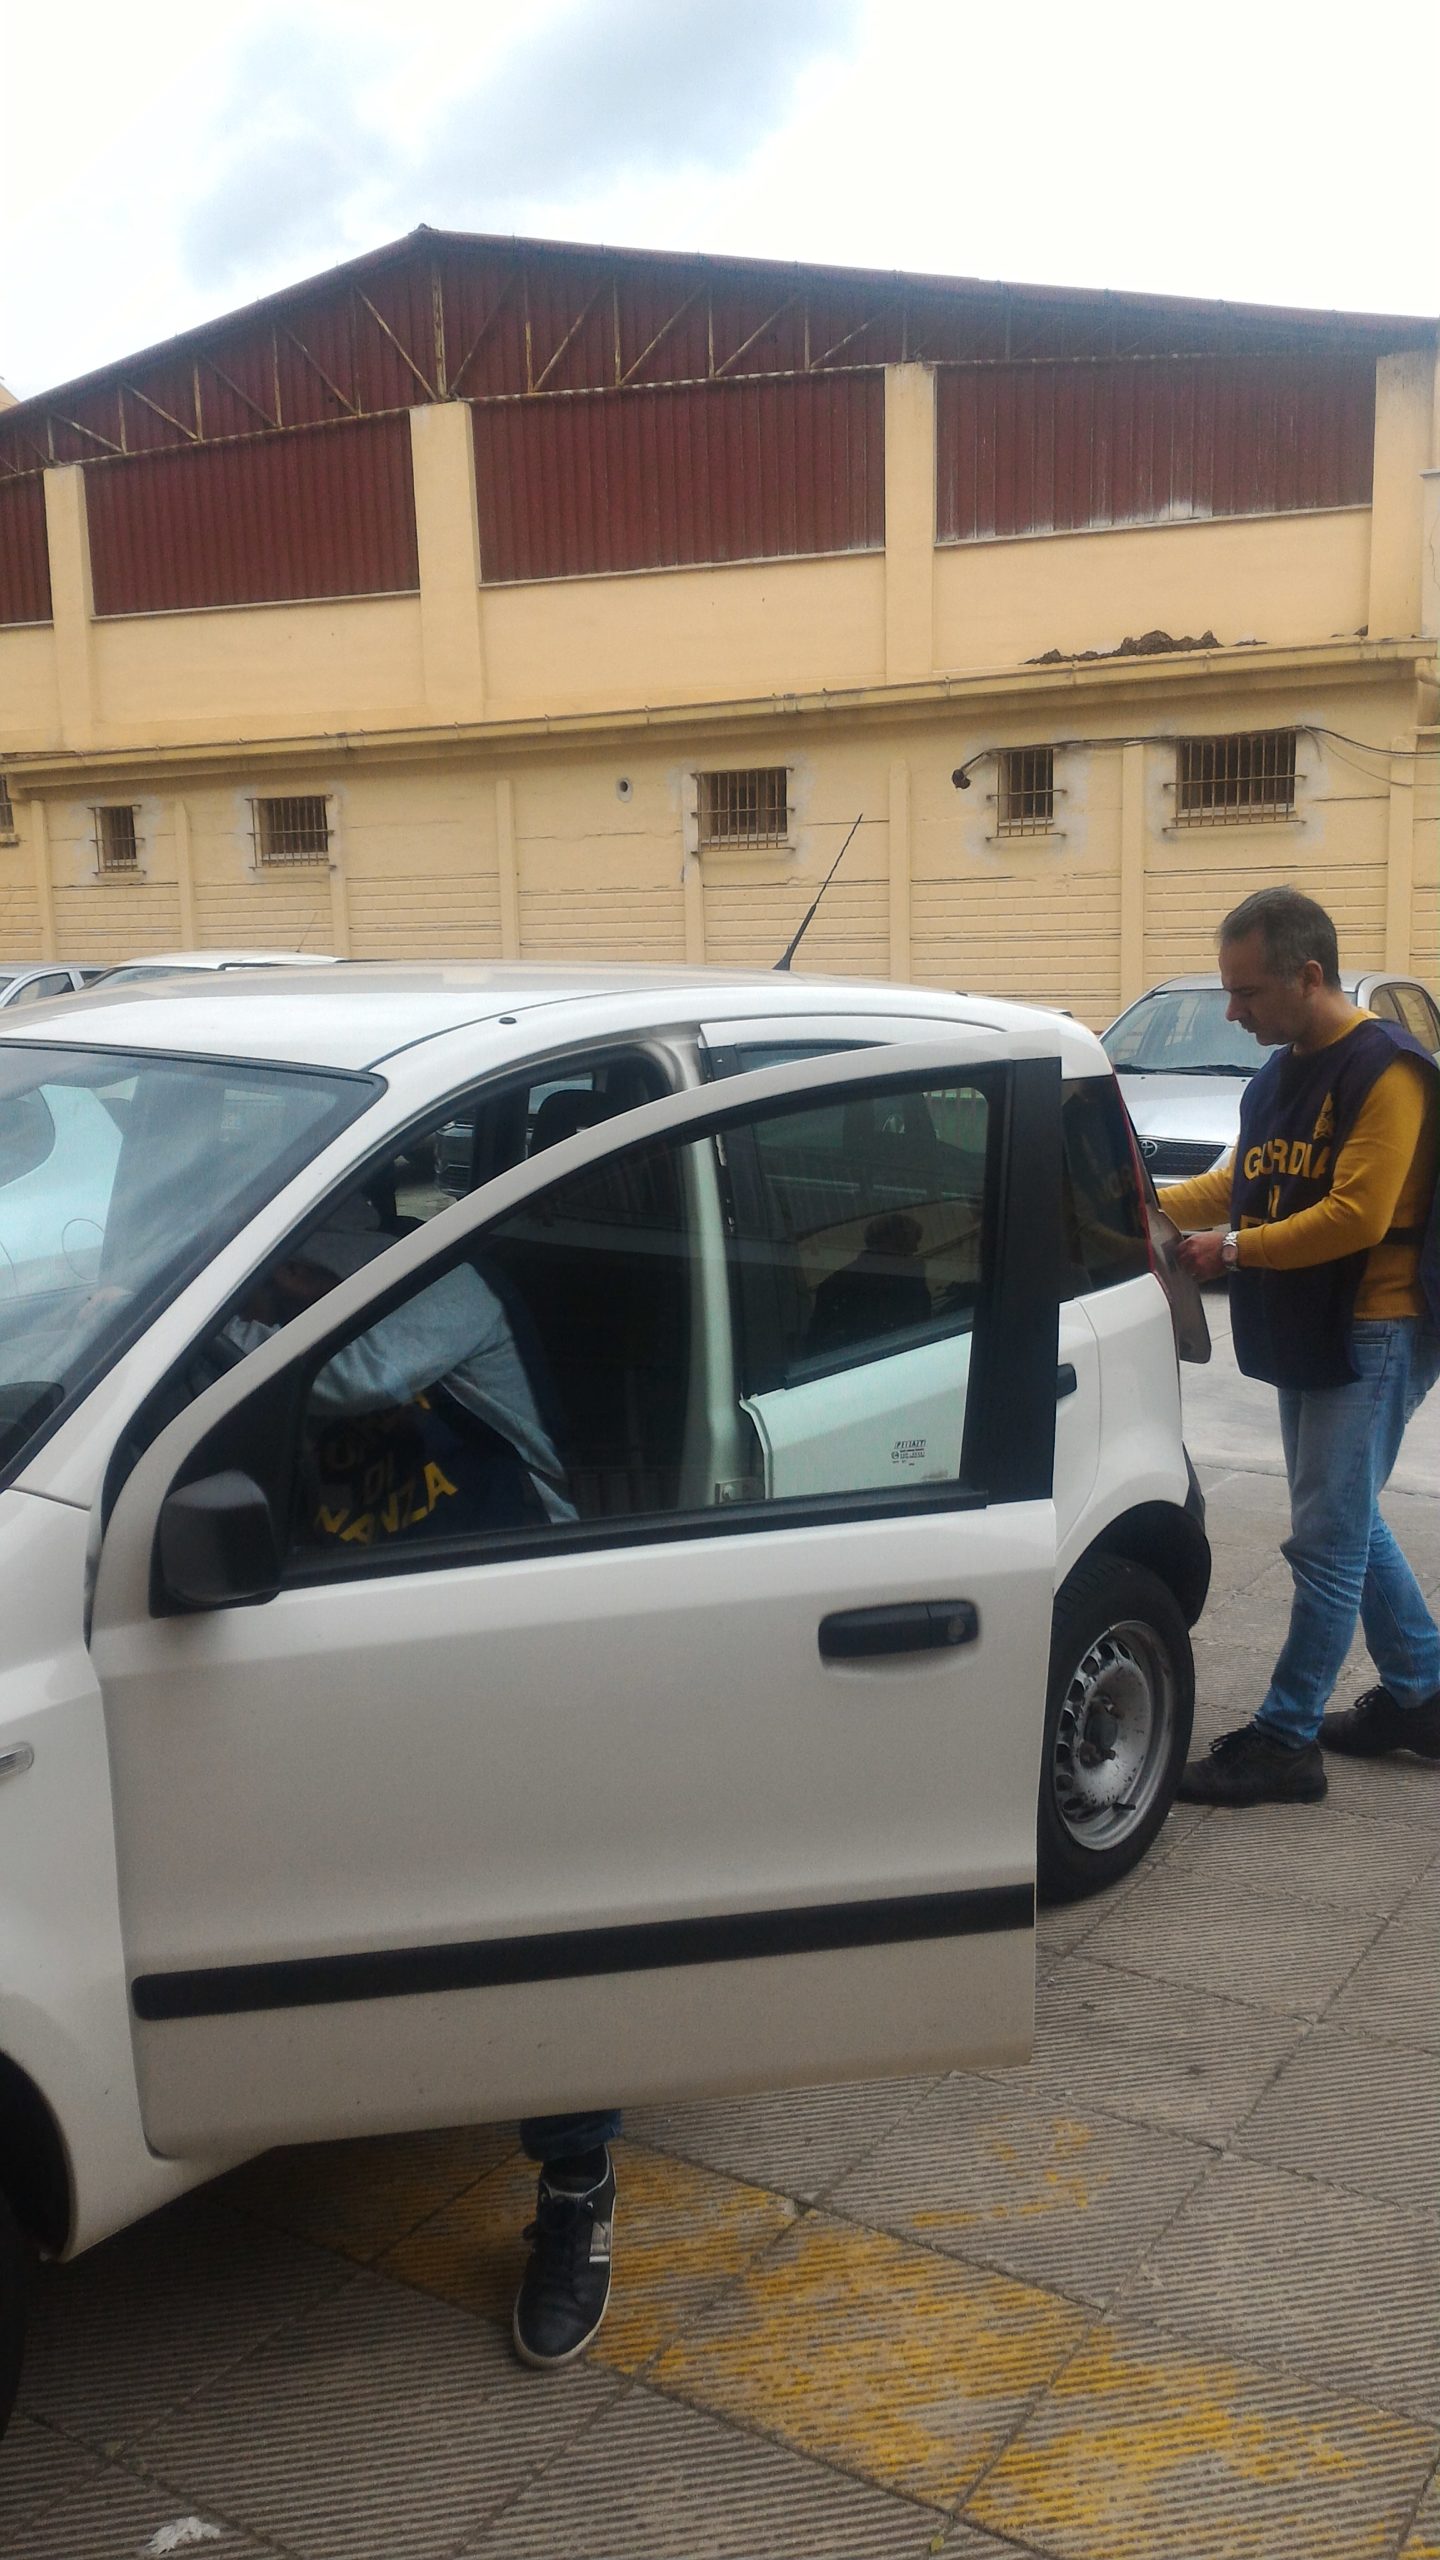 Dipendente regionale denunciato per peculato: usava l'auto per tornare nella sua abitazione in provincia di Palermo